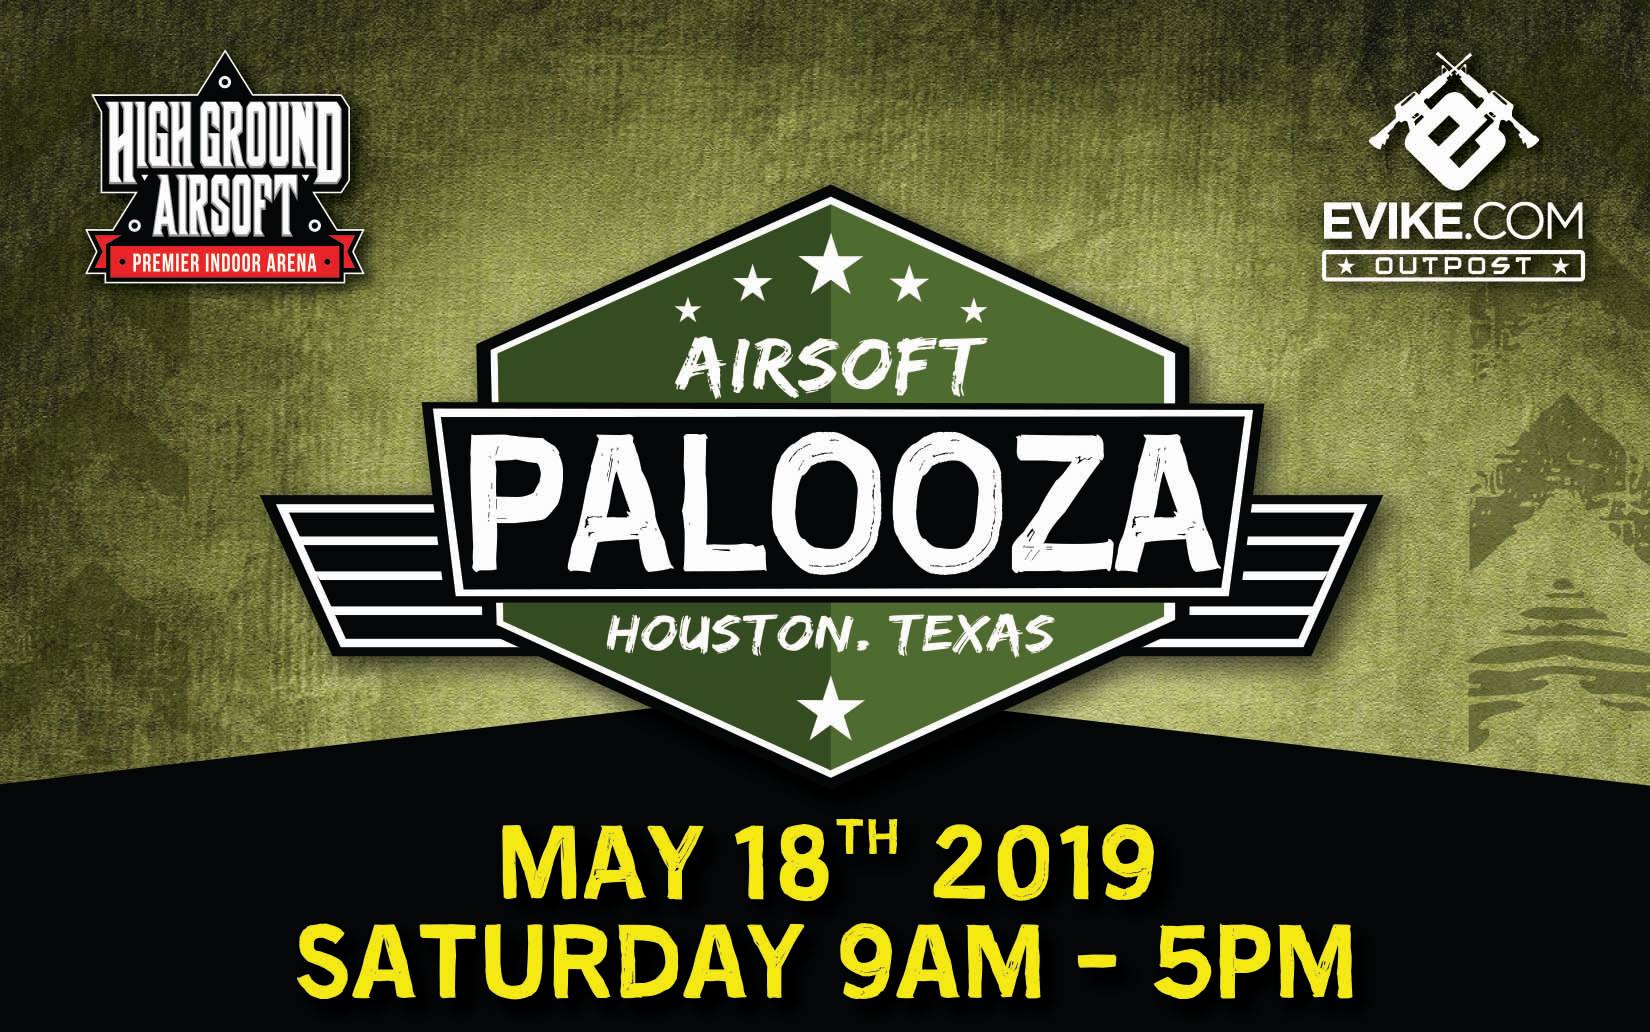 Next weekend: Airsoft Palooza 2019